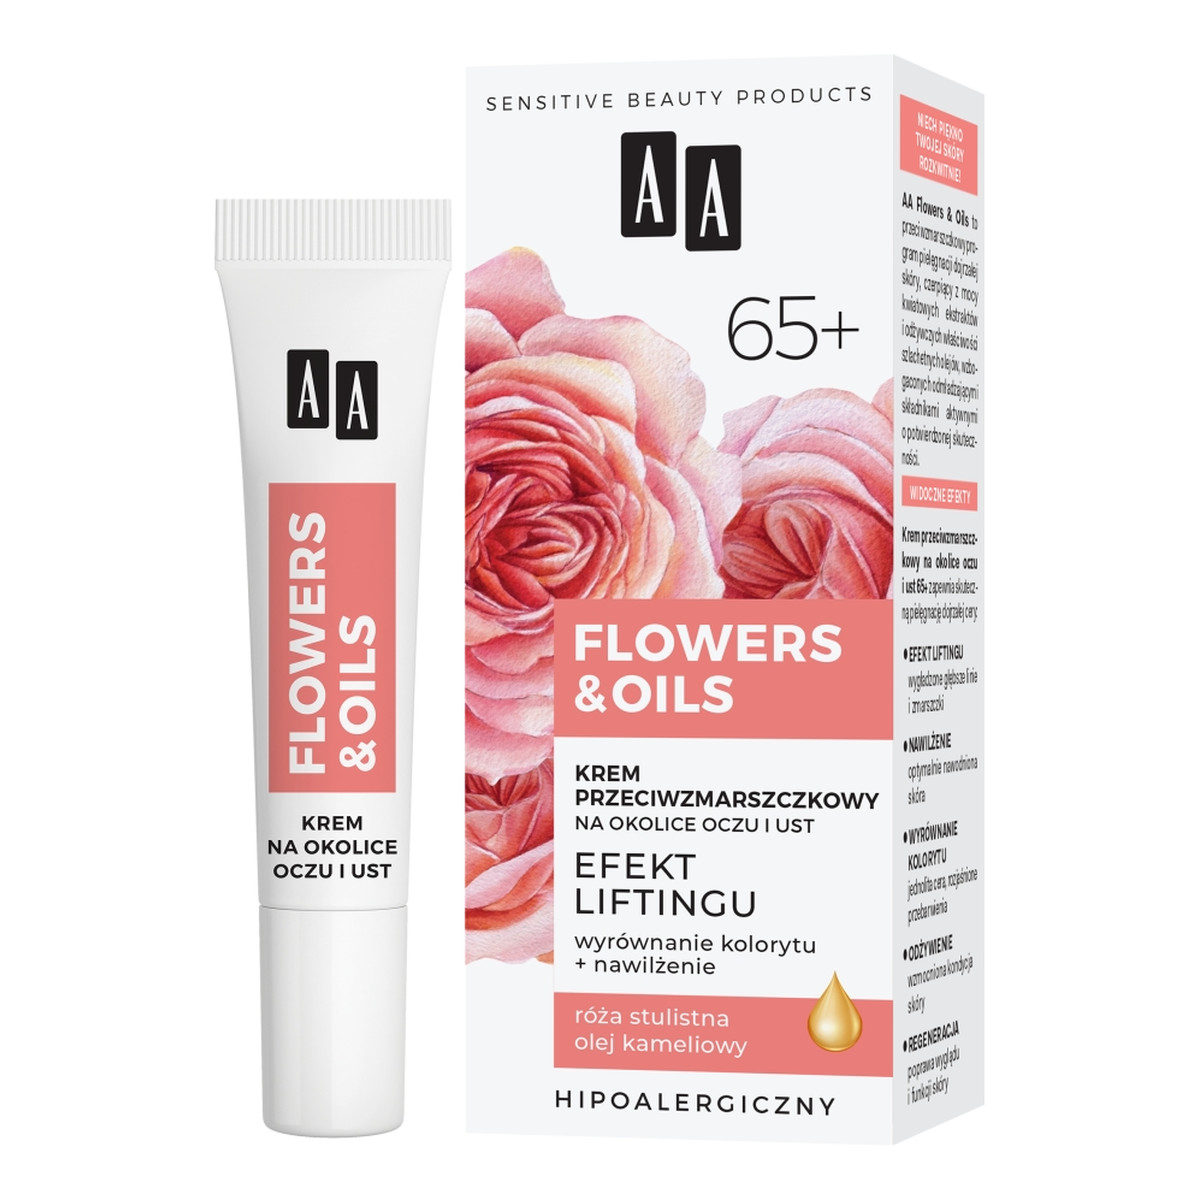 AA Flowers & Oils Krem przeciwzmarszczkowy na okolice oczu i ust - efekt liftingu 65+ 15ml